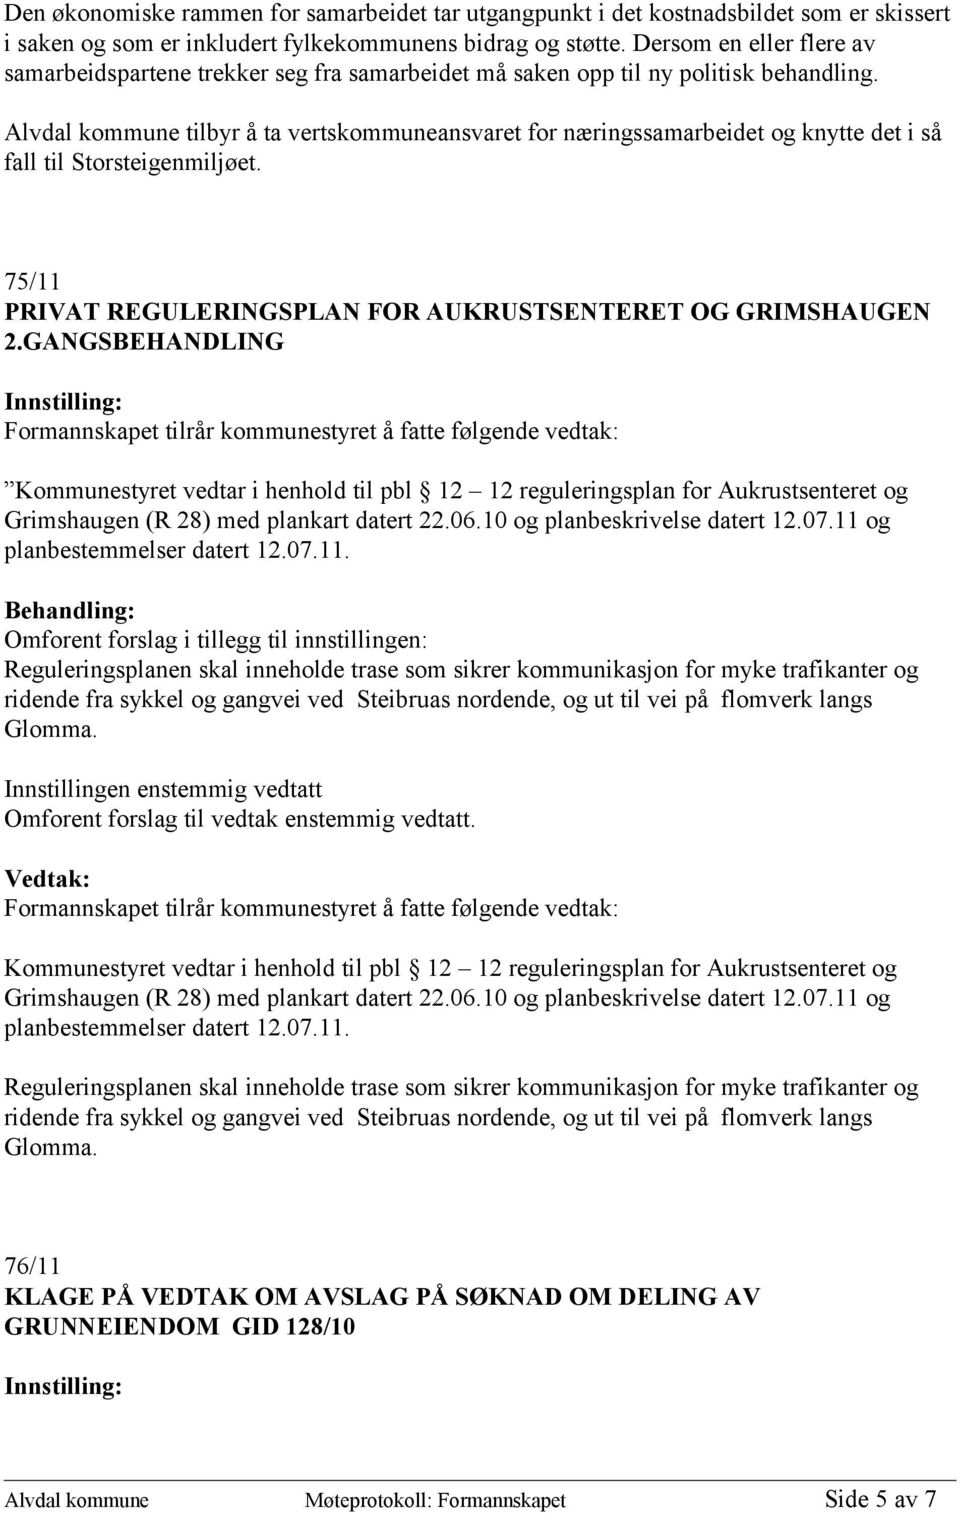 Alvdal kommune tilbyr å ta vertskommuneansvaret for næringssamarbeidet og knytte det i så fall til Storsteigenmiljøet. 75/11 PRIVAT REGULERINGSPLAN FOR AUKRUSTSENTERET OG GRIMSHAUGEN 2.